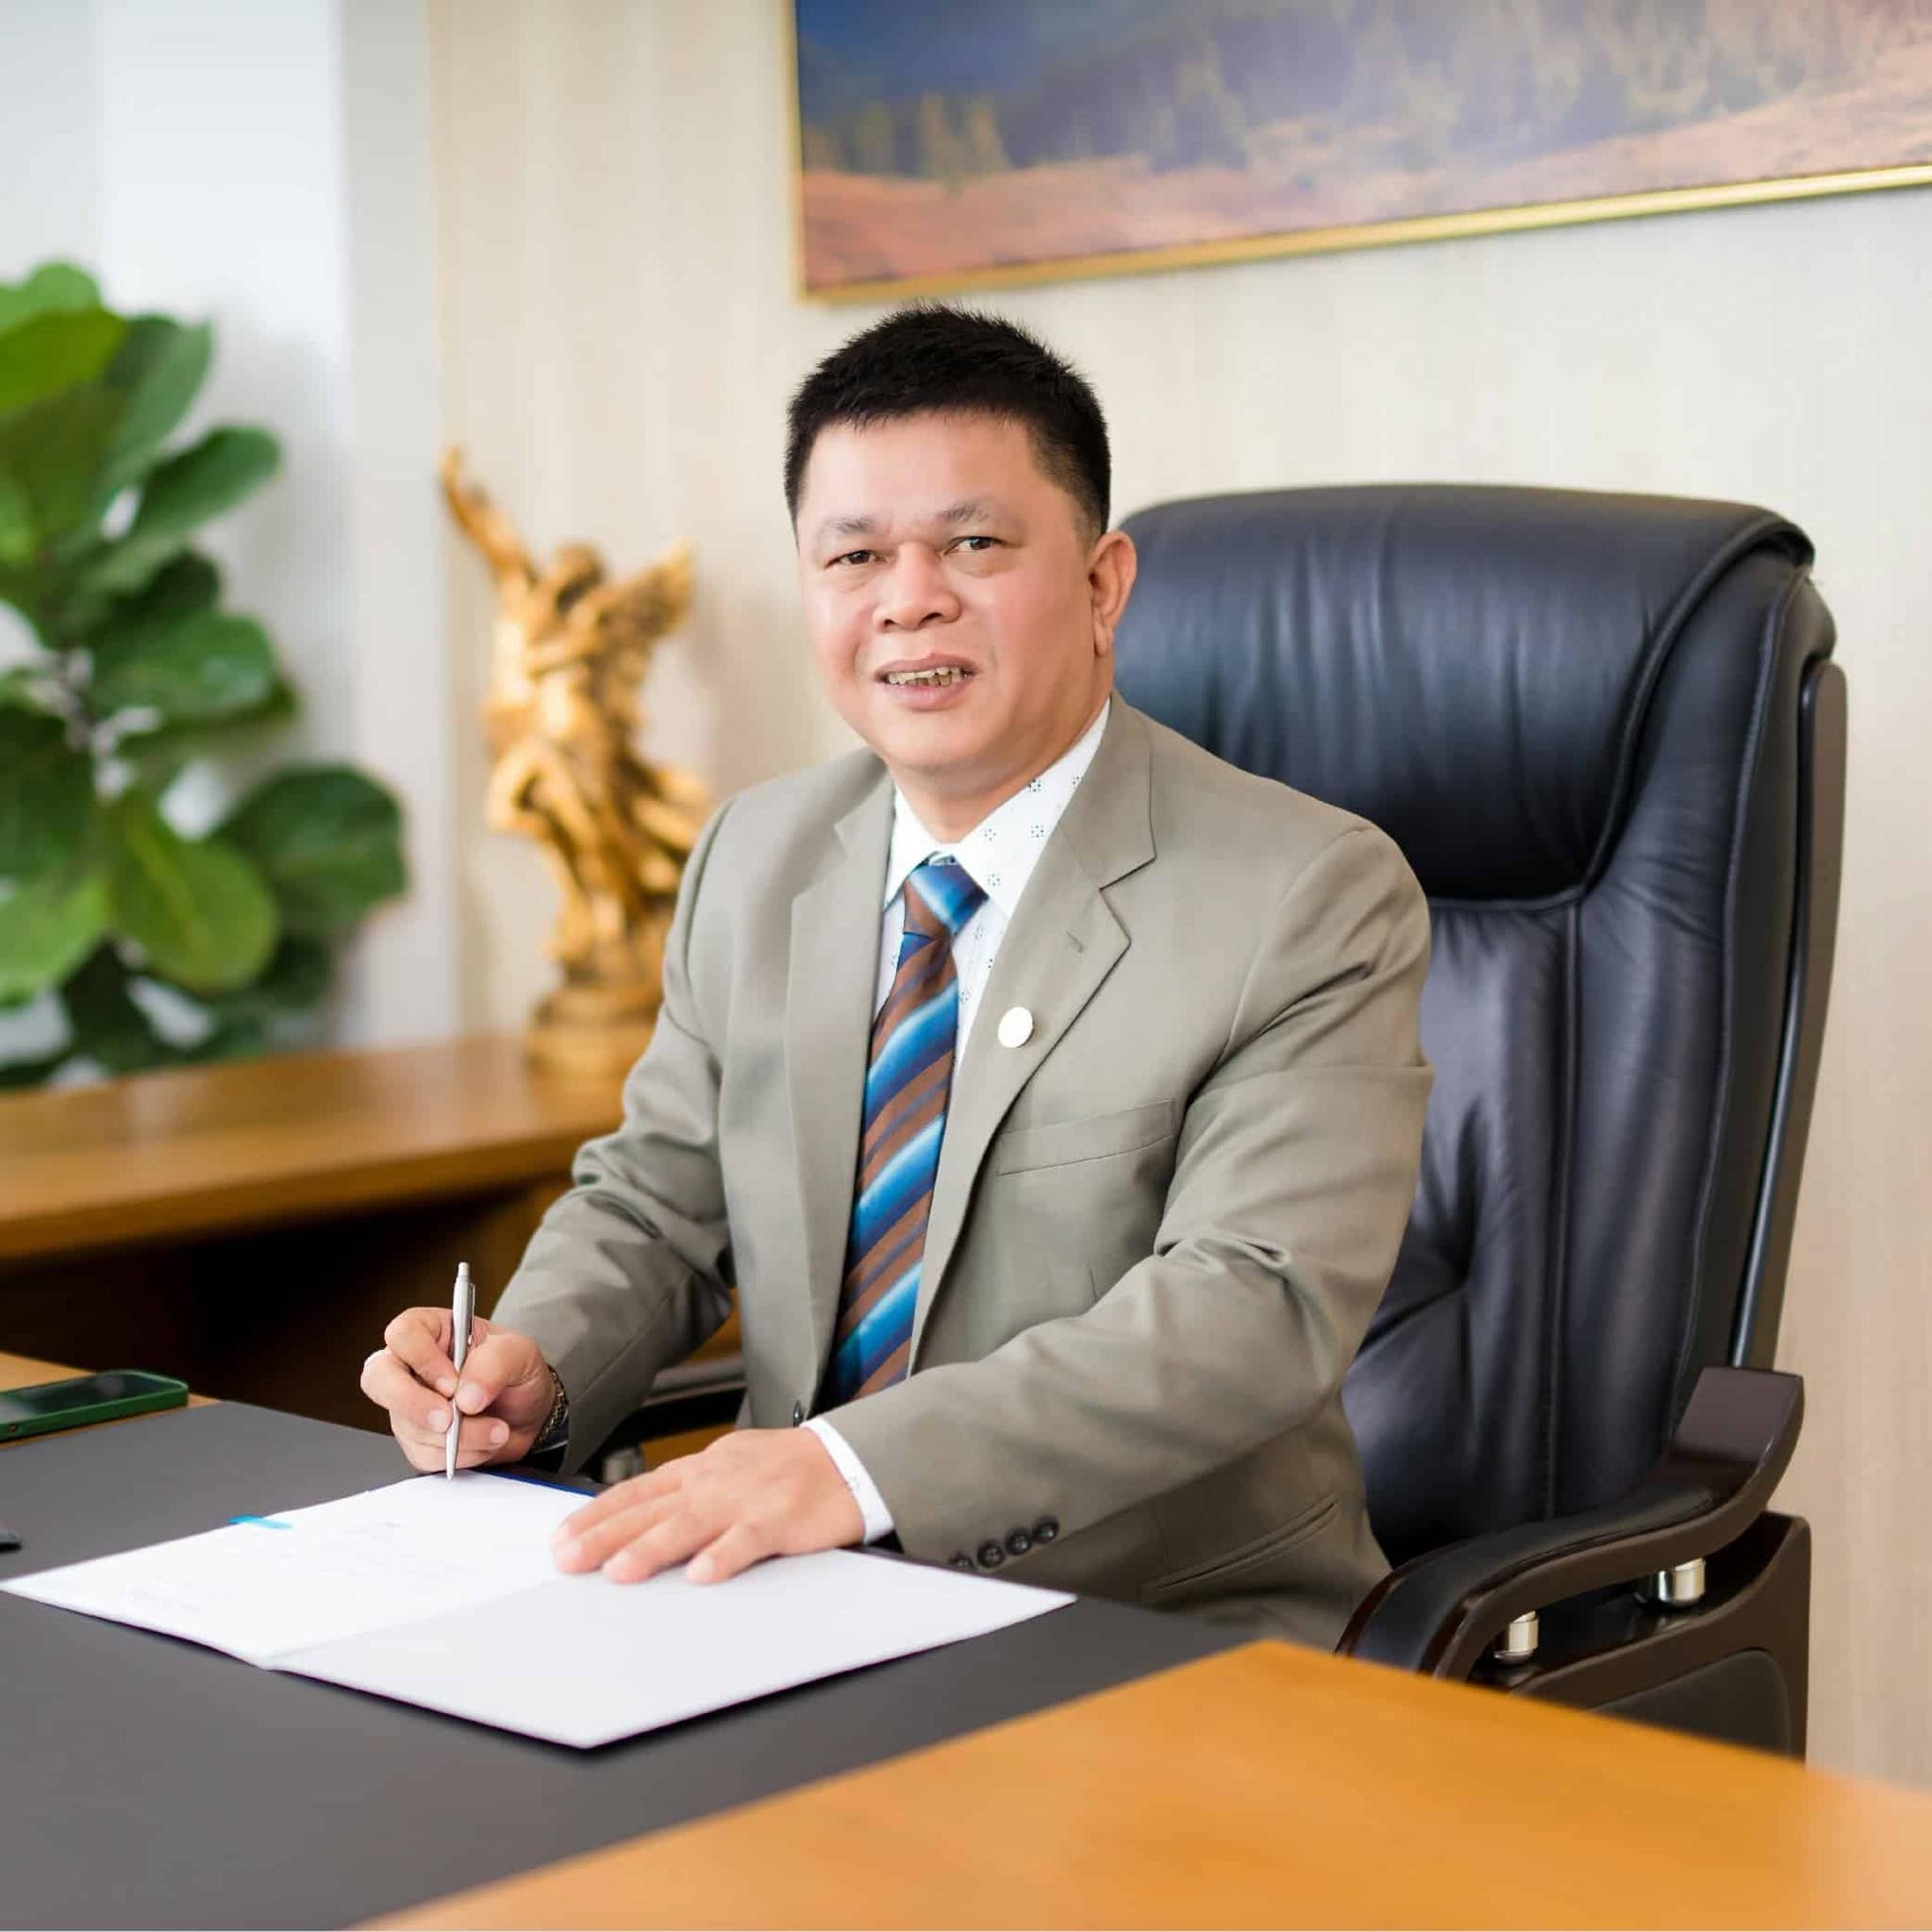 
Chân dung ông Hồ Minh Quang - Chủ tịch Hội đồng quản trị của Công ty CP Thép Nam Kim
